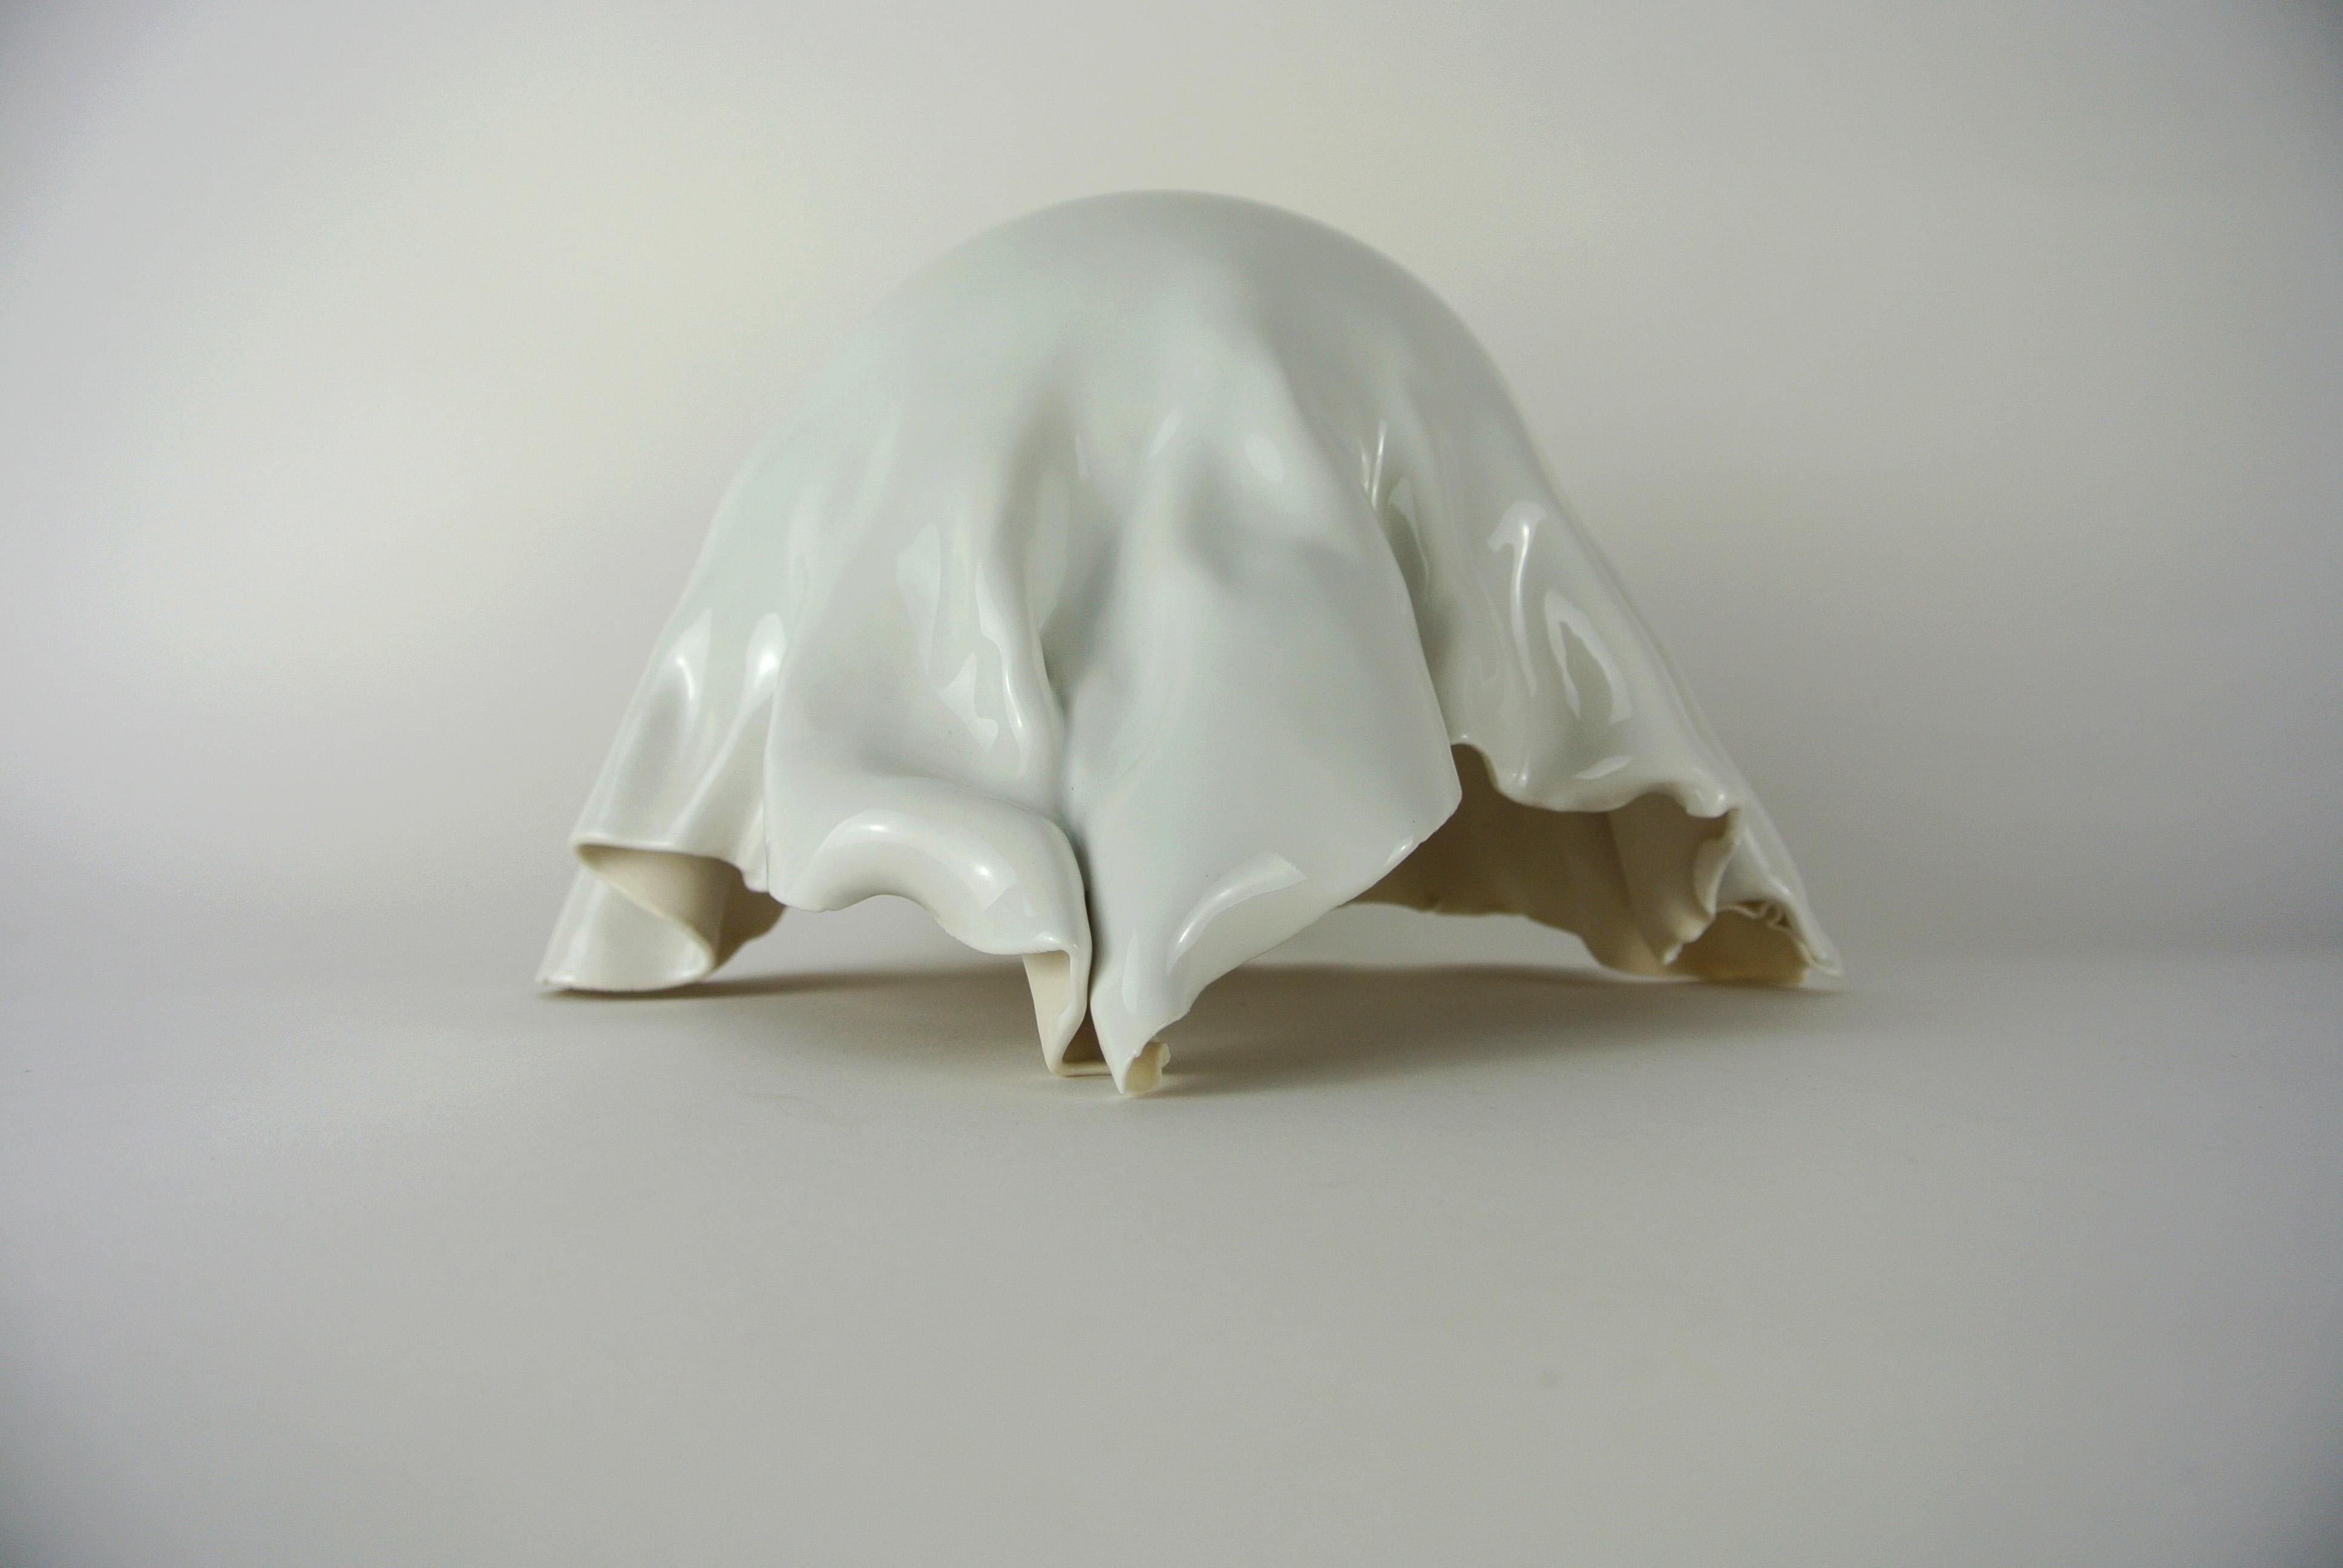 Objeto contemporáneo de porcelana blanca con esmalte blanco brillante hecho a mano por la artista danesa Christine Roland. 
Un objeto plegado único, esmaltado sólo por fuera.
 